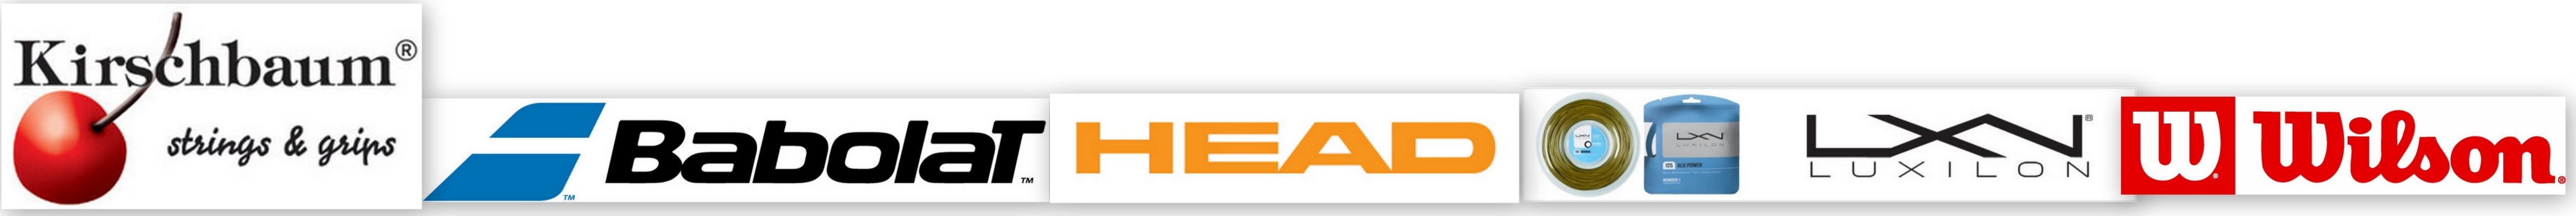 brand logo banner.jpg